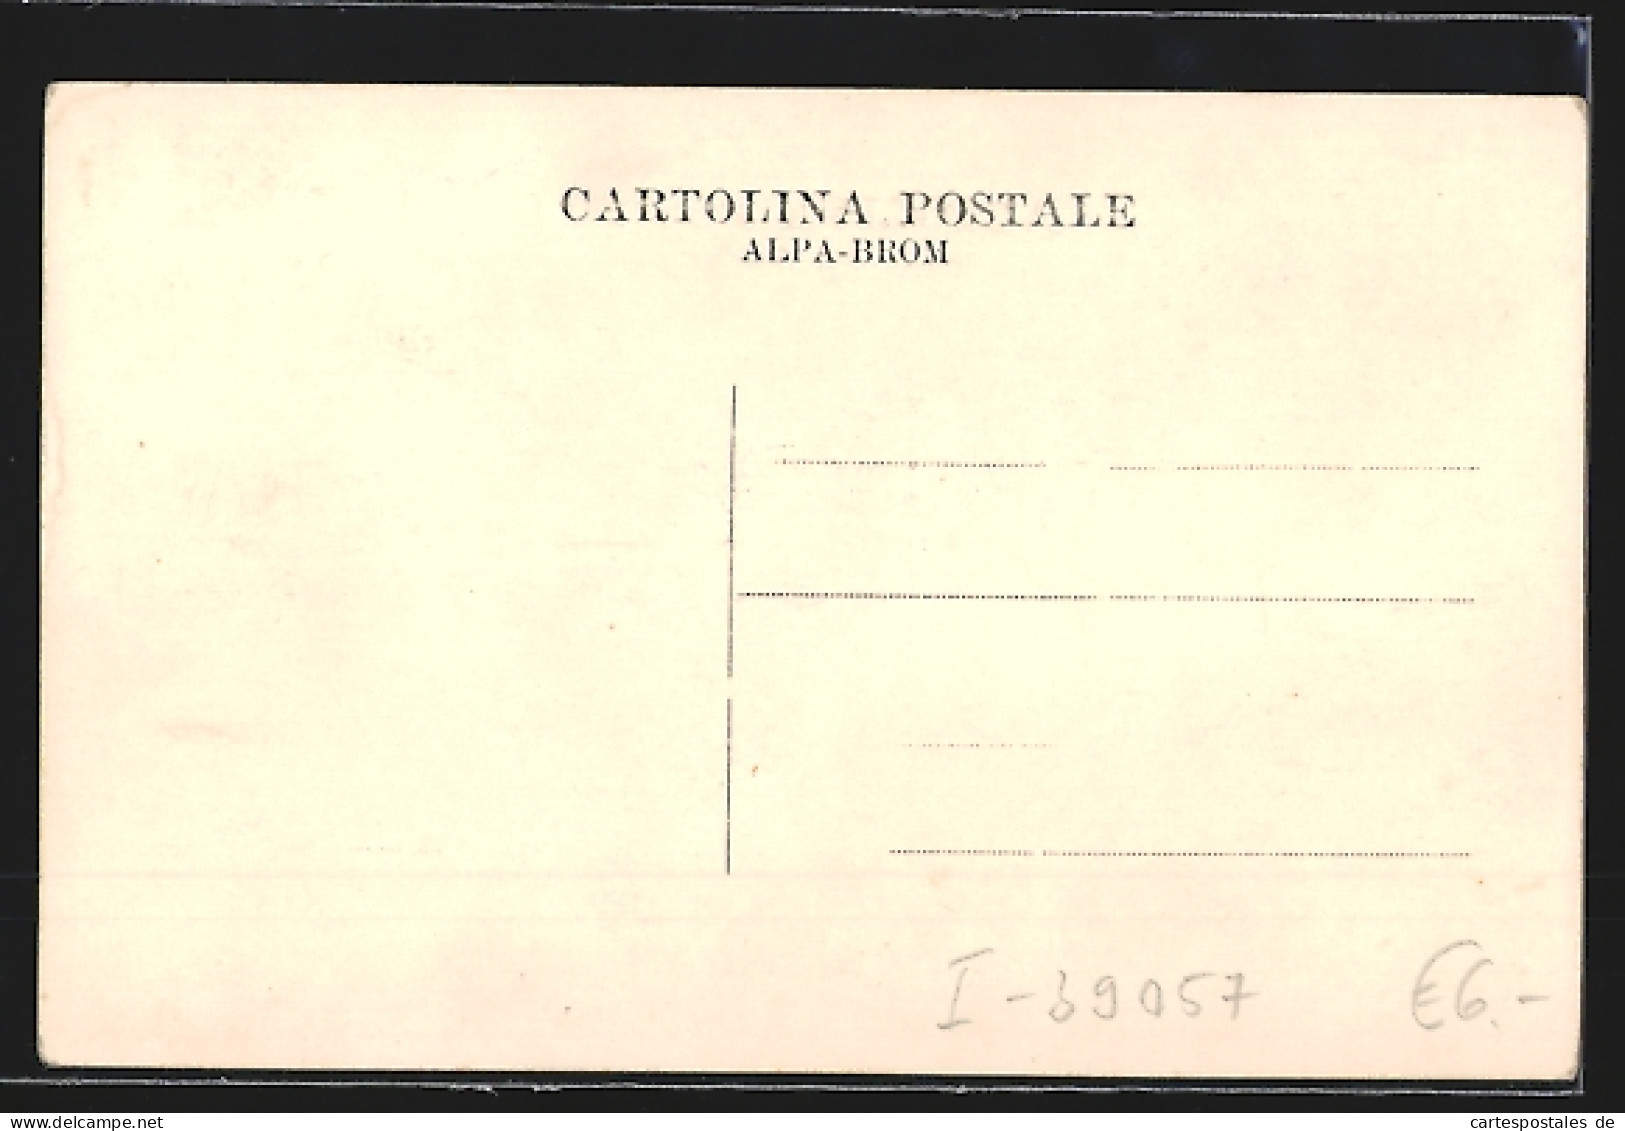 Cartolina S. Michele Appiano /Bolzano, Castello Paschbach  - Bolzano